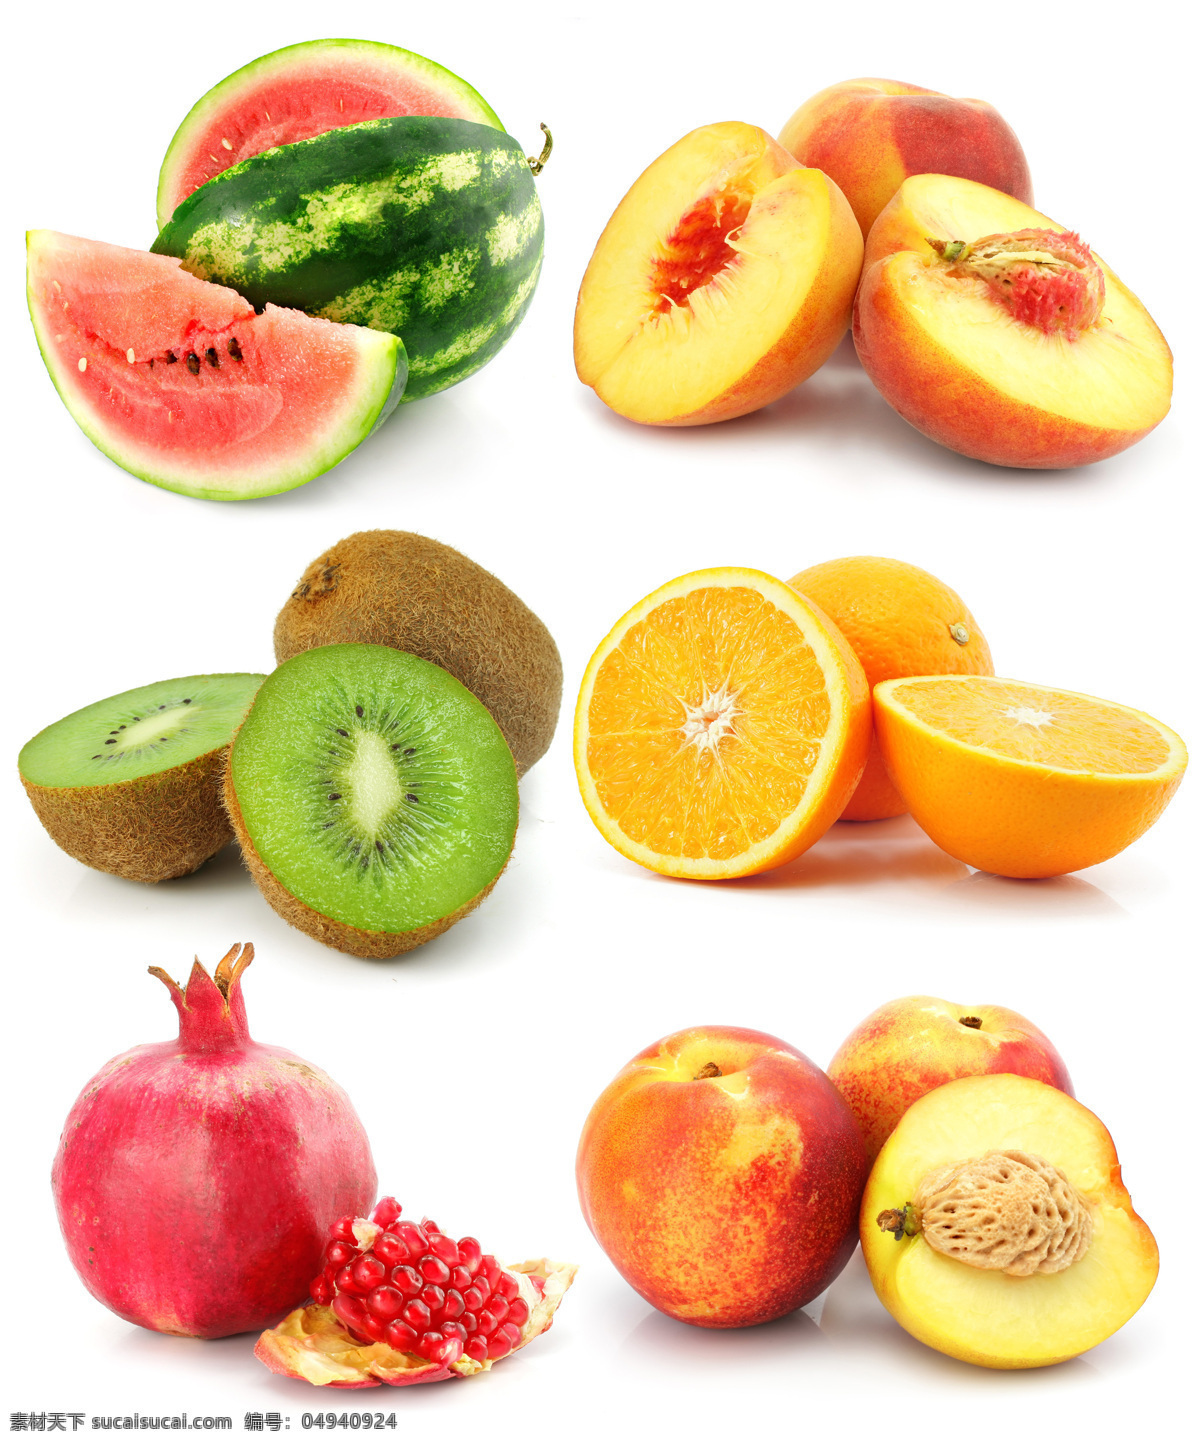 新鲜 水果 摄影图片 新鲜水果 西瓜 水蜜桃 猕猴桃 橙子 石榴 水果摄影 水果蔬菜 餐饮美食 白色